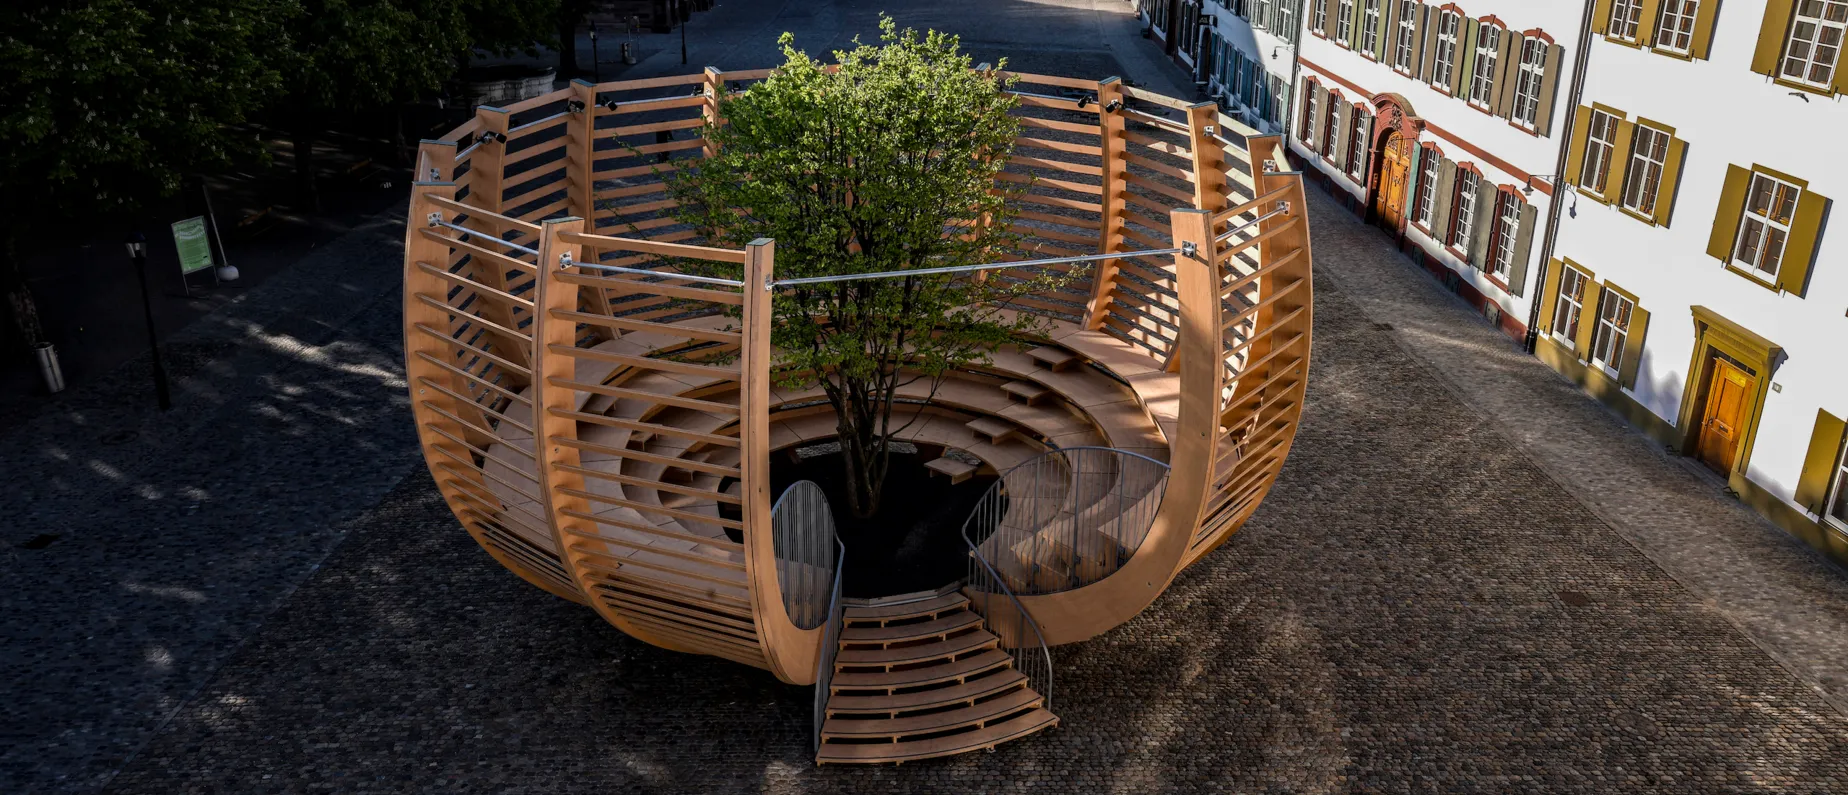 Arena für einen Baum - begehbare Kunstintervention von Klaus Littmann, Münsterplatz Basel, 2021, präsentiert von KBH.G